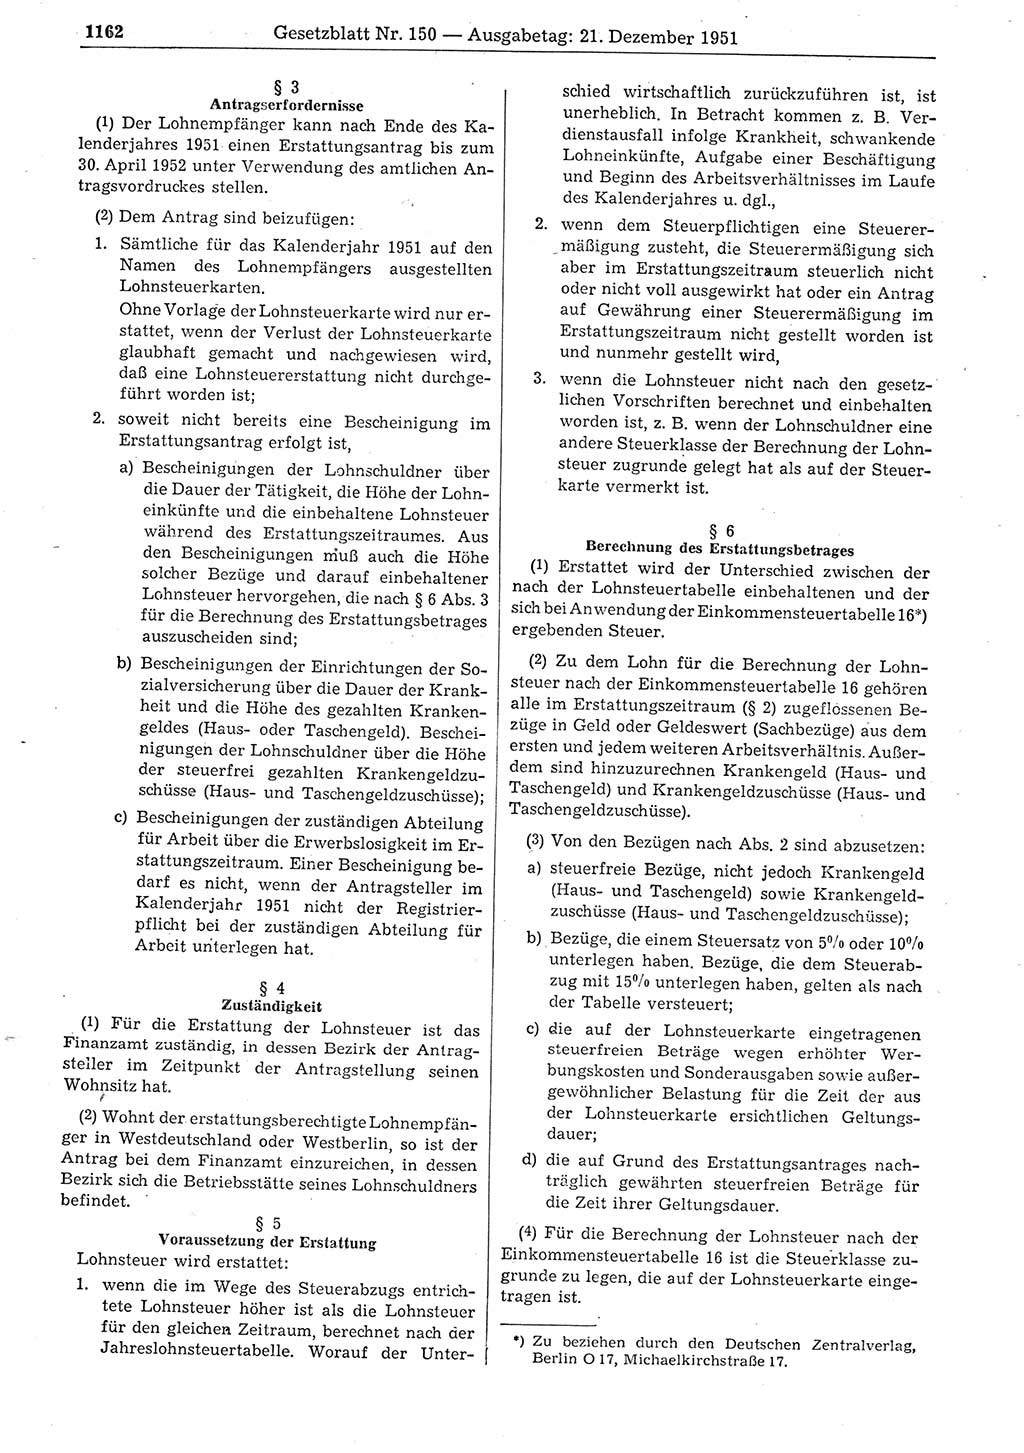 Gesetzblatt (GBl.) der Deutschen Demokratischen Republik (DDR) 1951, Seite 1164 (GBl. DDR 1951, S. 1164)